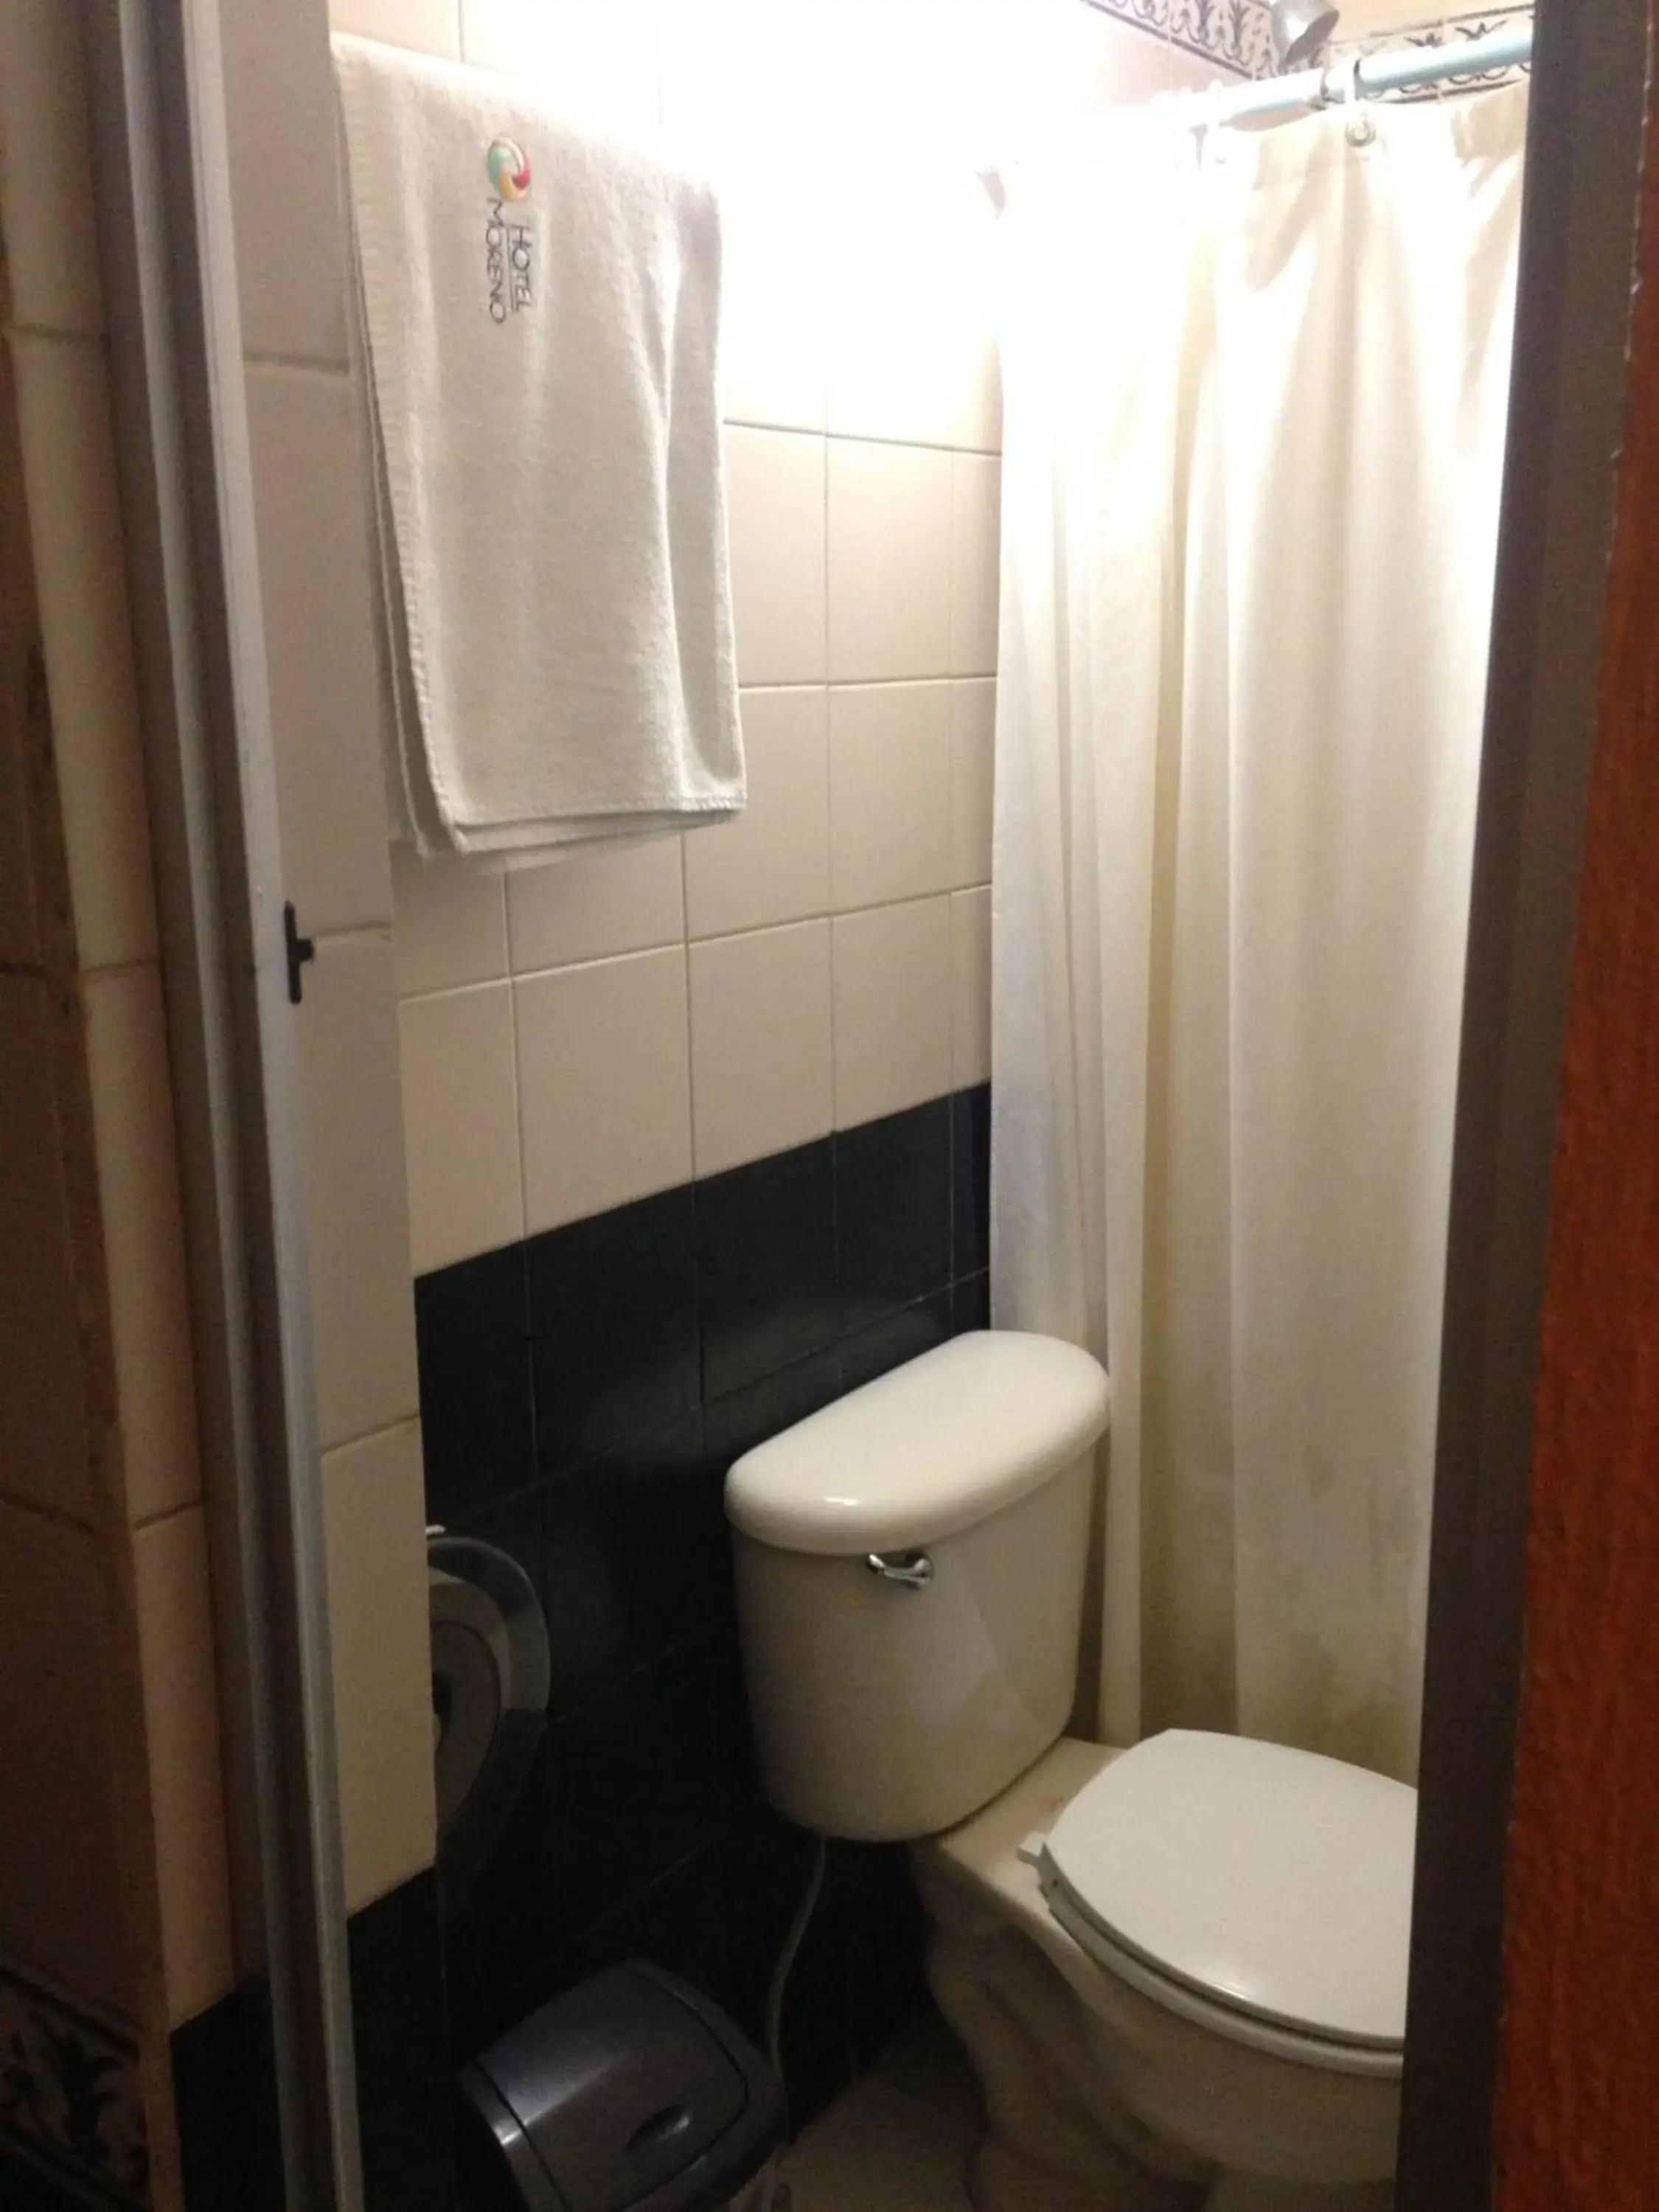 Bathroom in Hotel Moreno